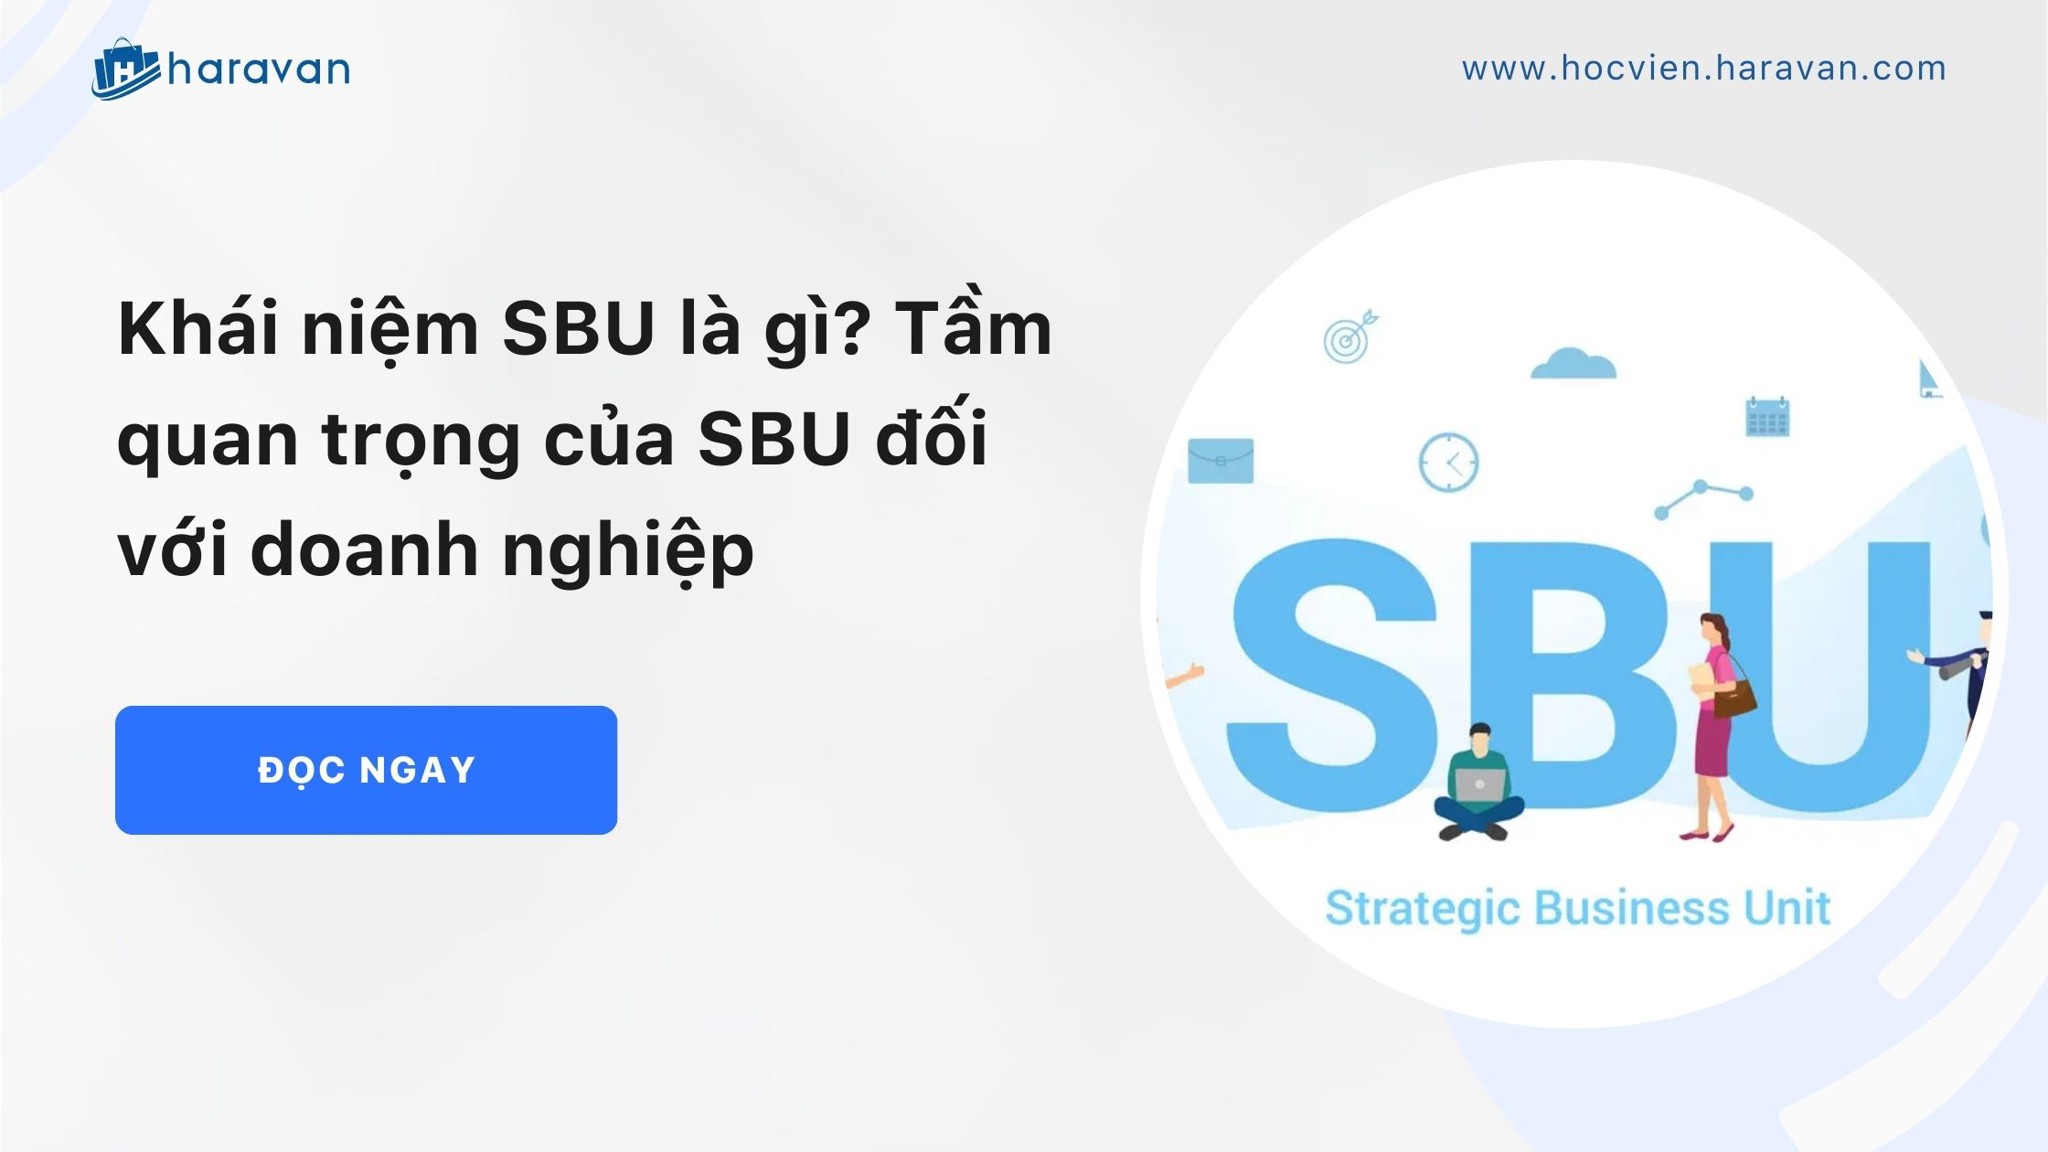 Khái niệm SBU là gì? Tầm quan trọng của SBU đối với doanh nghiệp